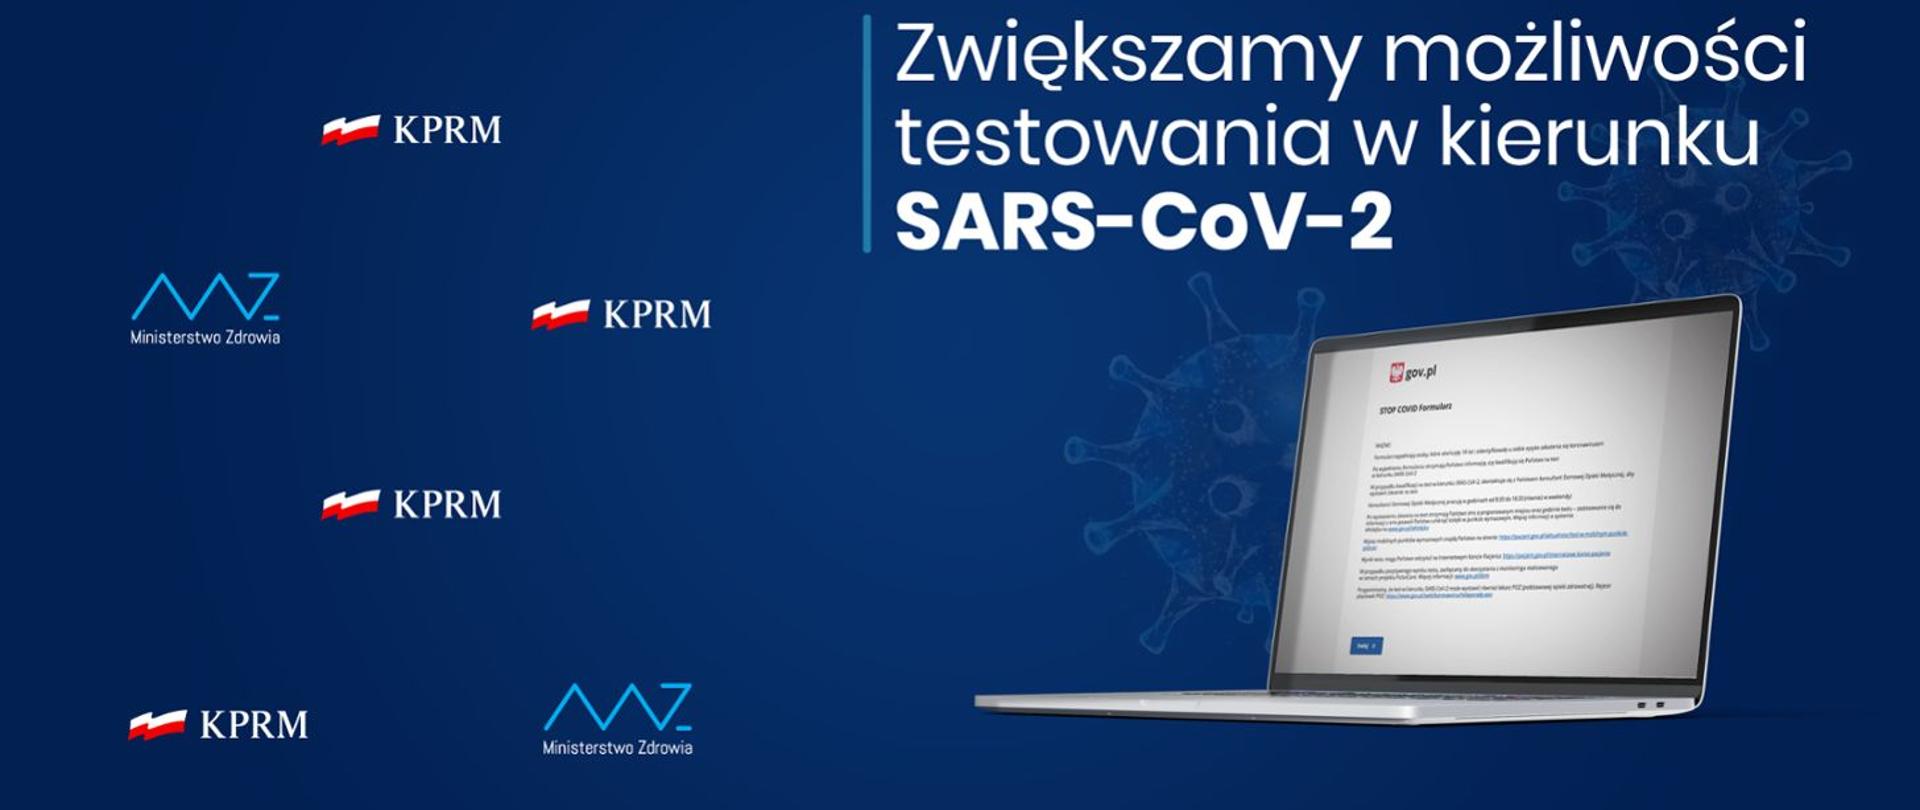 baner zachęcający do testowania w kierunku wykrycia SARS-0CoV-2